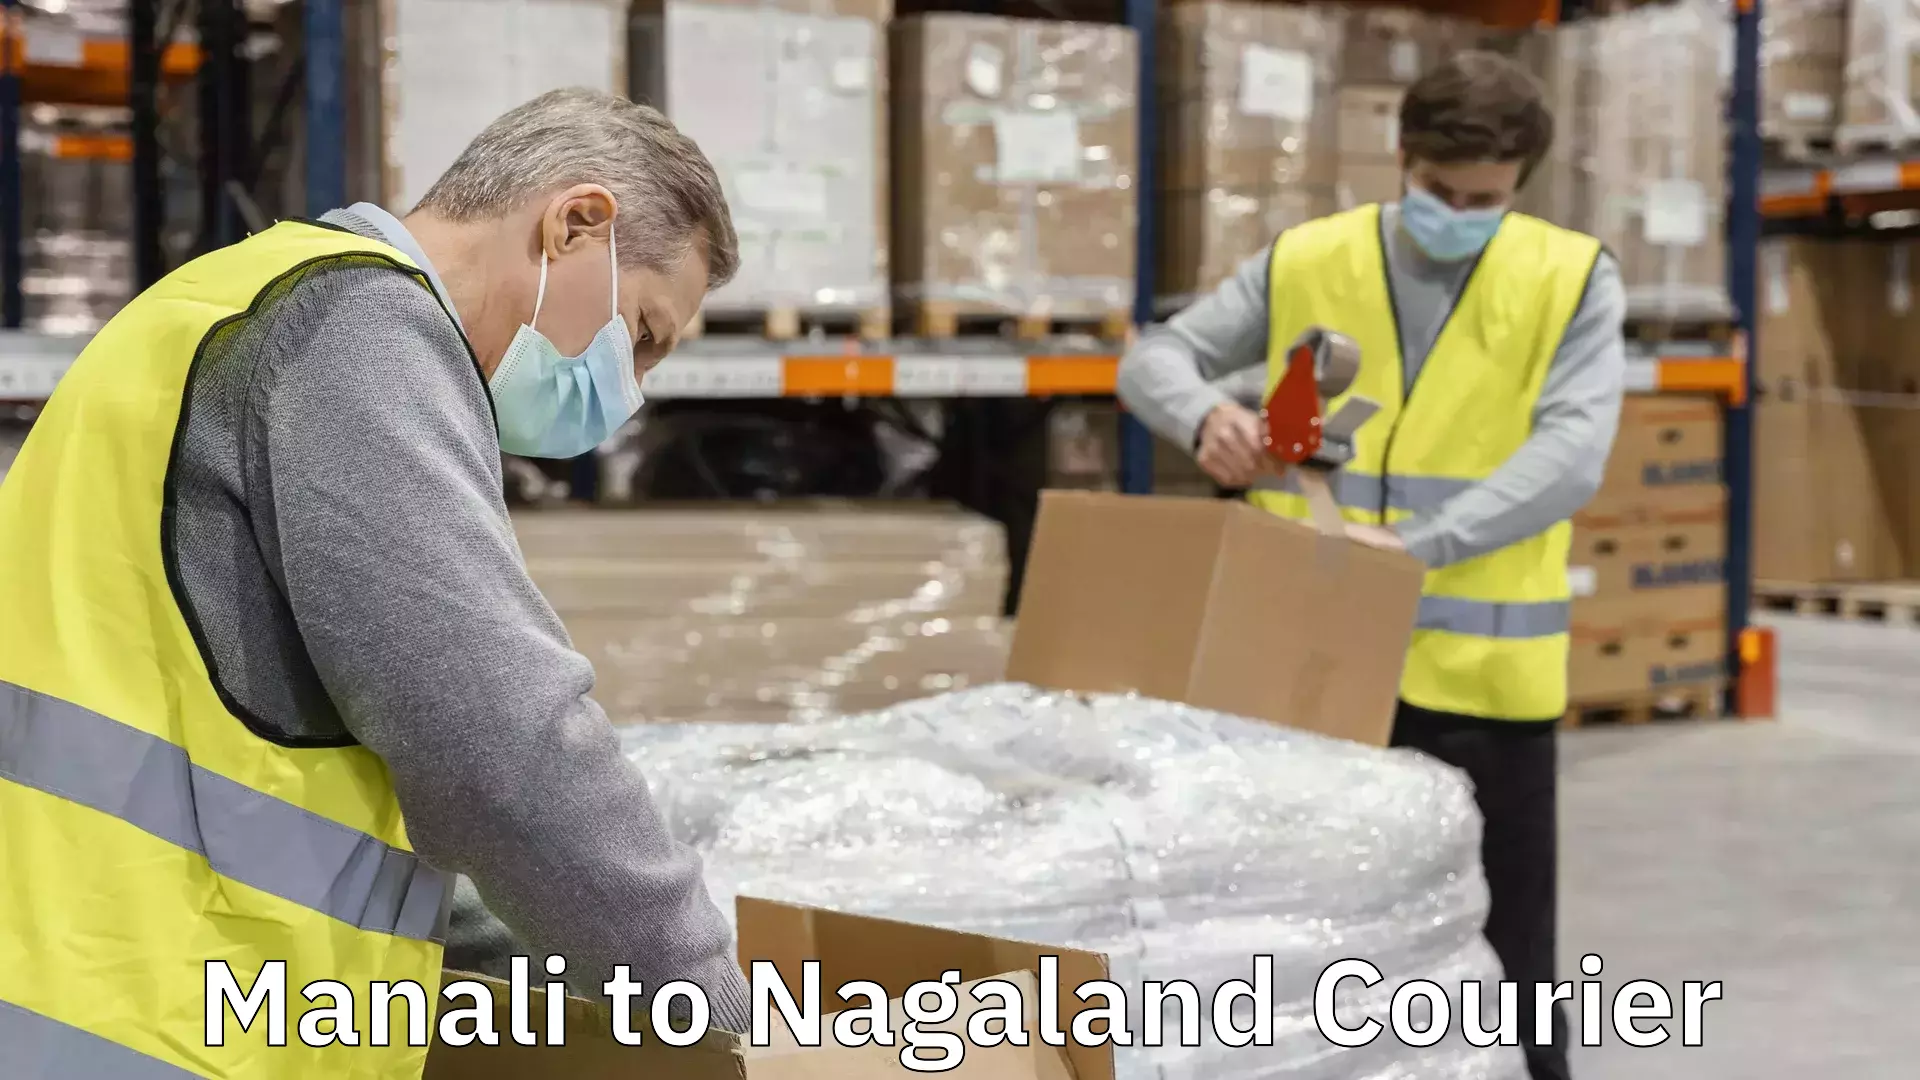 Global shipping networks Manali to Nagaland